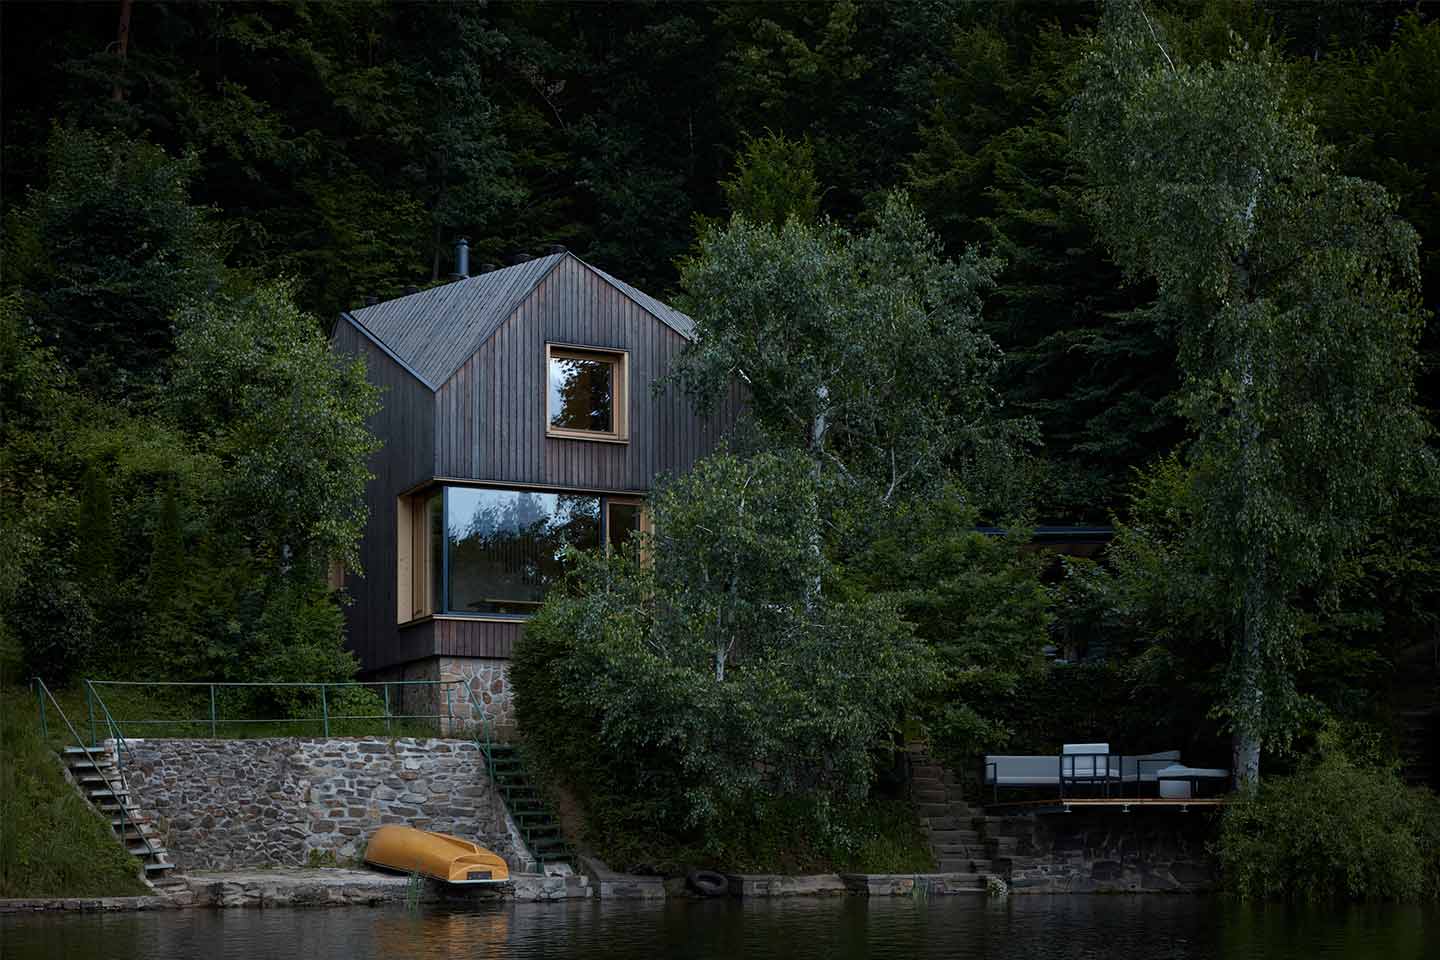 Cottage per le vacanze ispirato alla cabina di una nave